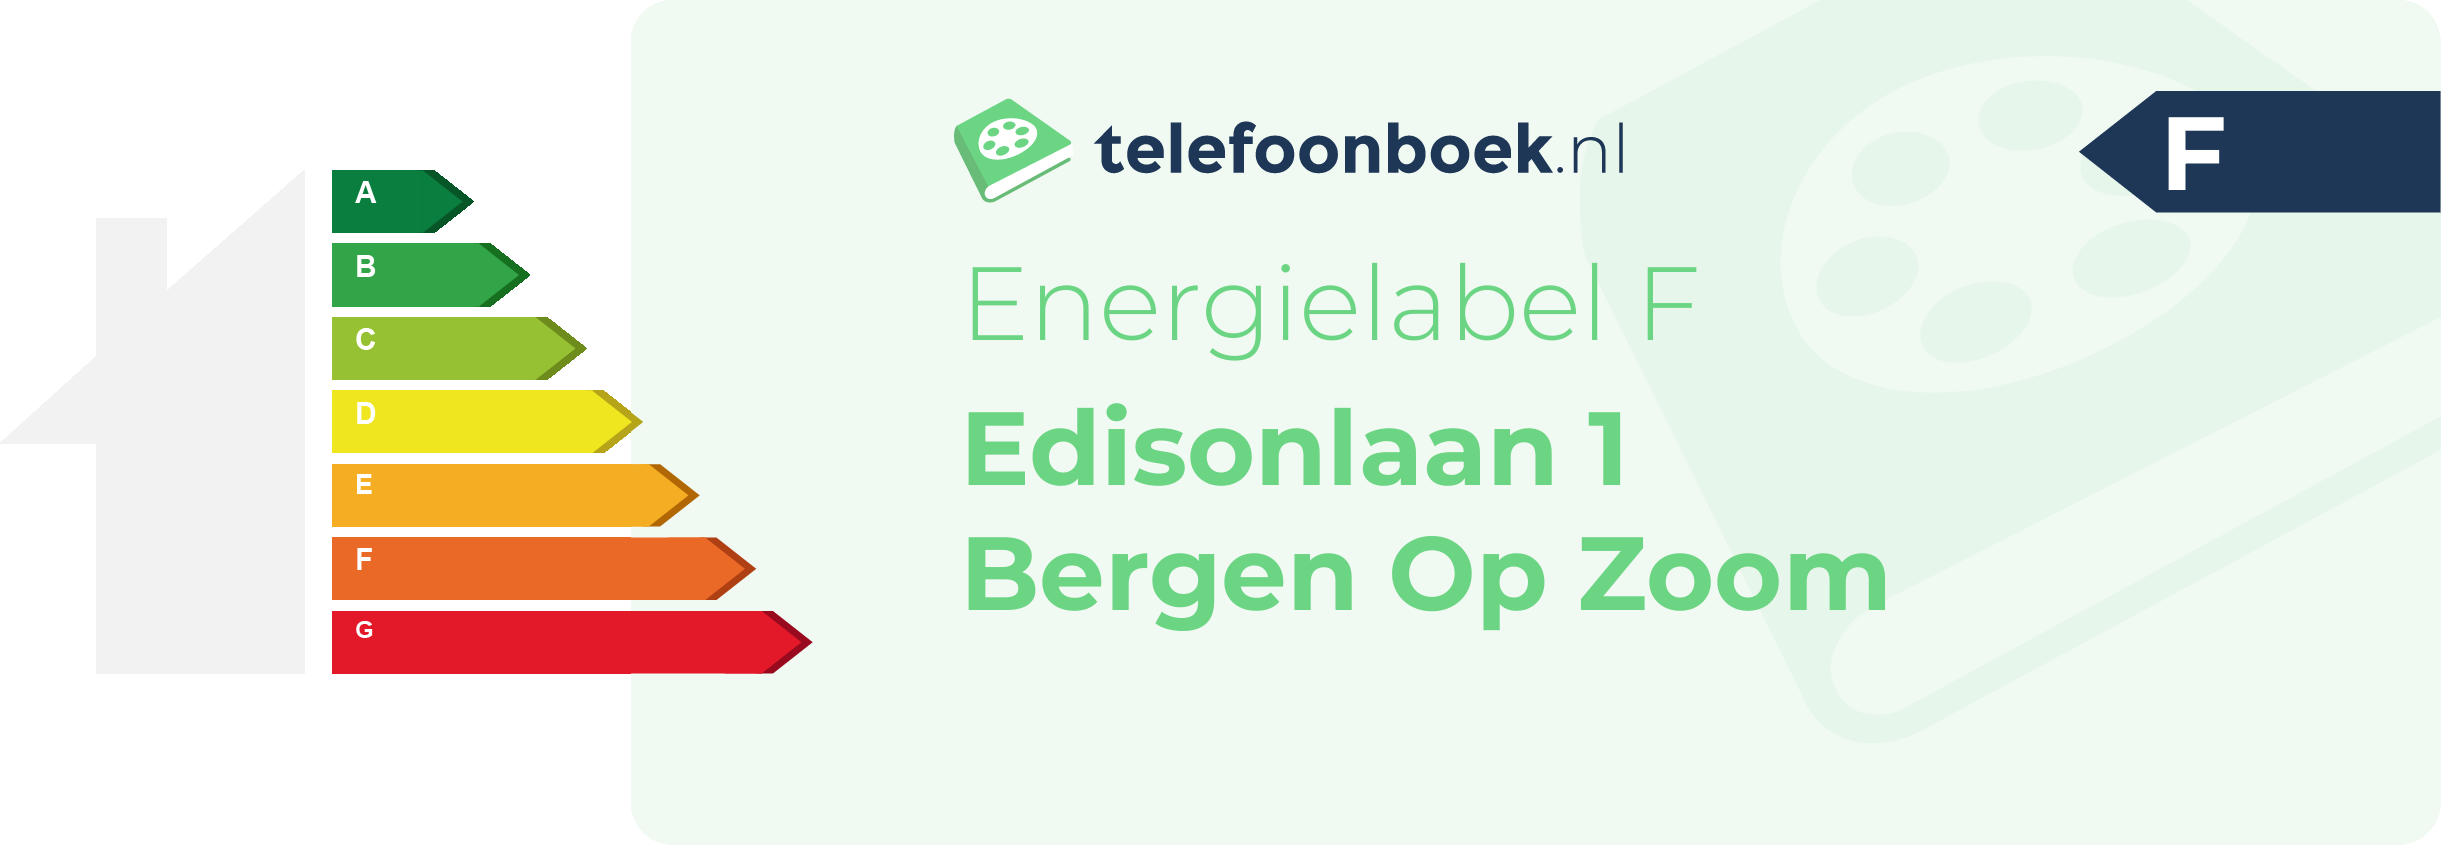 Energielabel Edisonlaan 1 Bergen Op Zoom